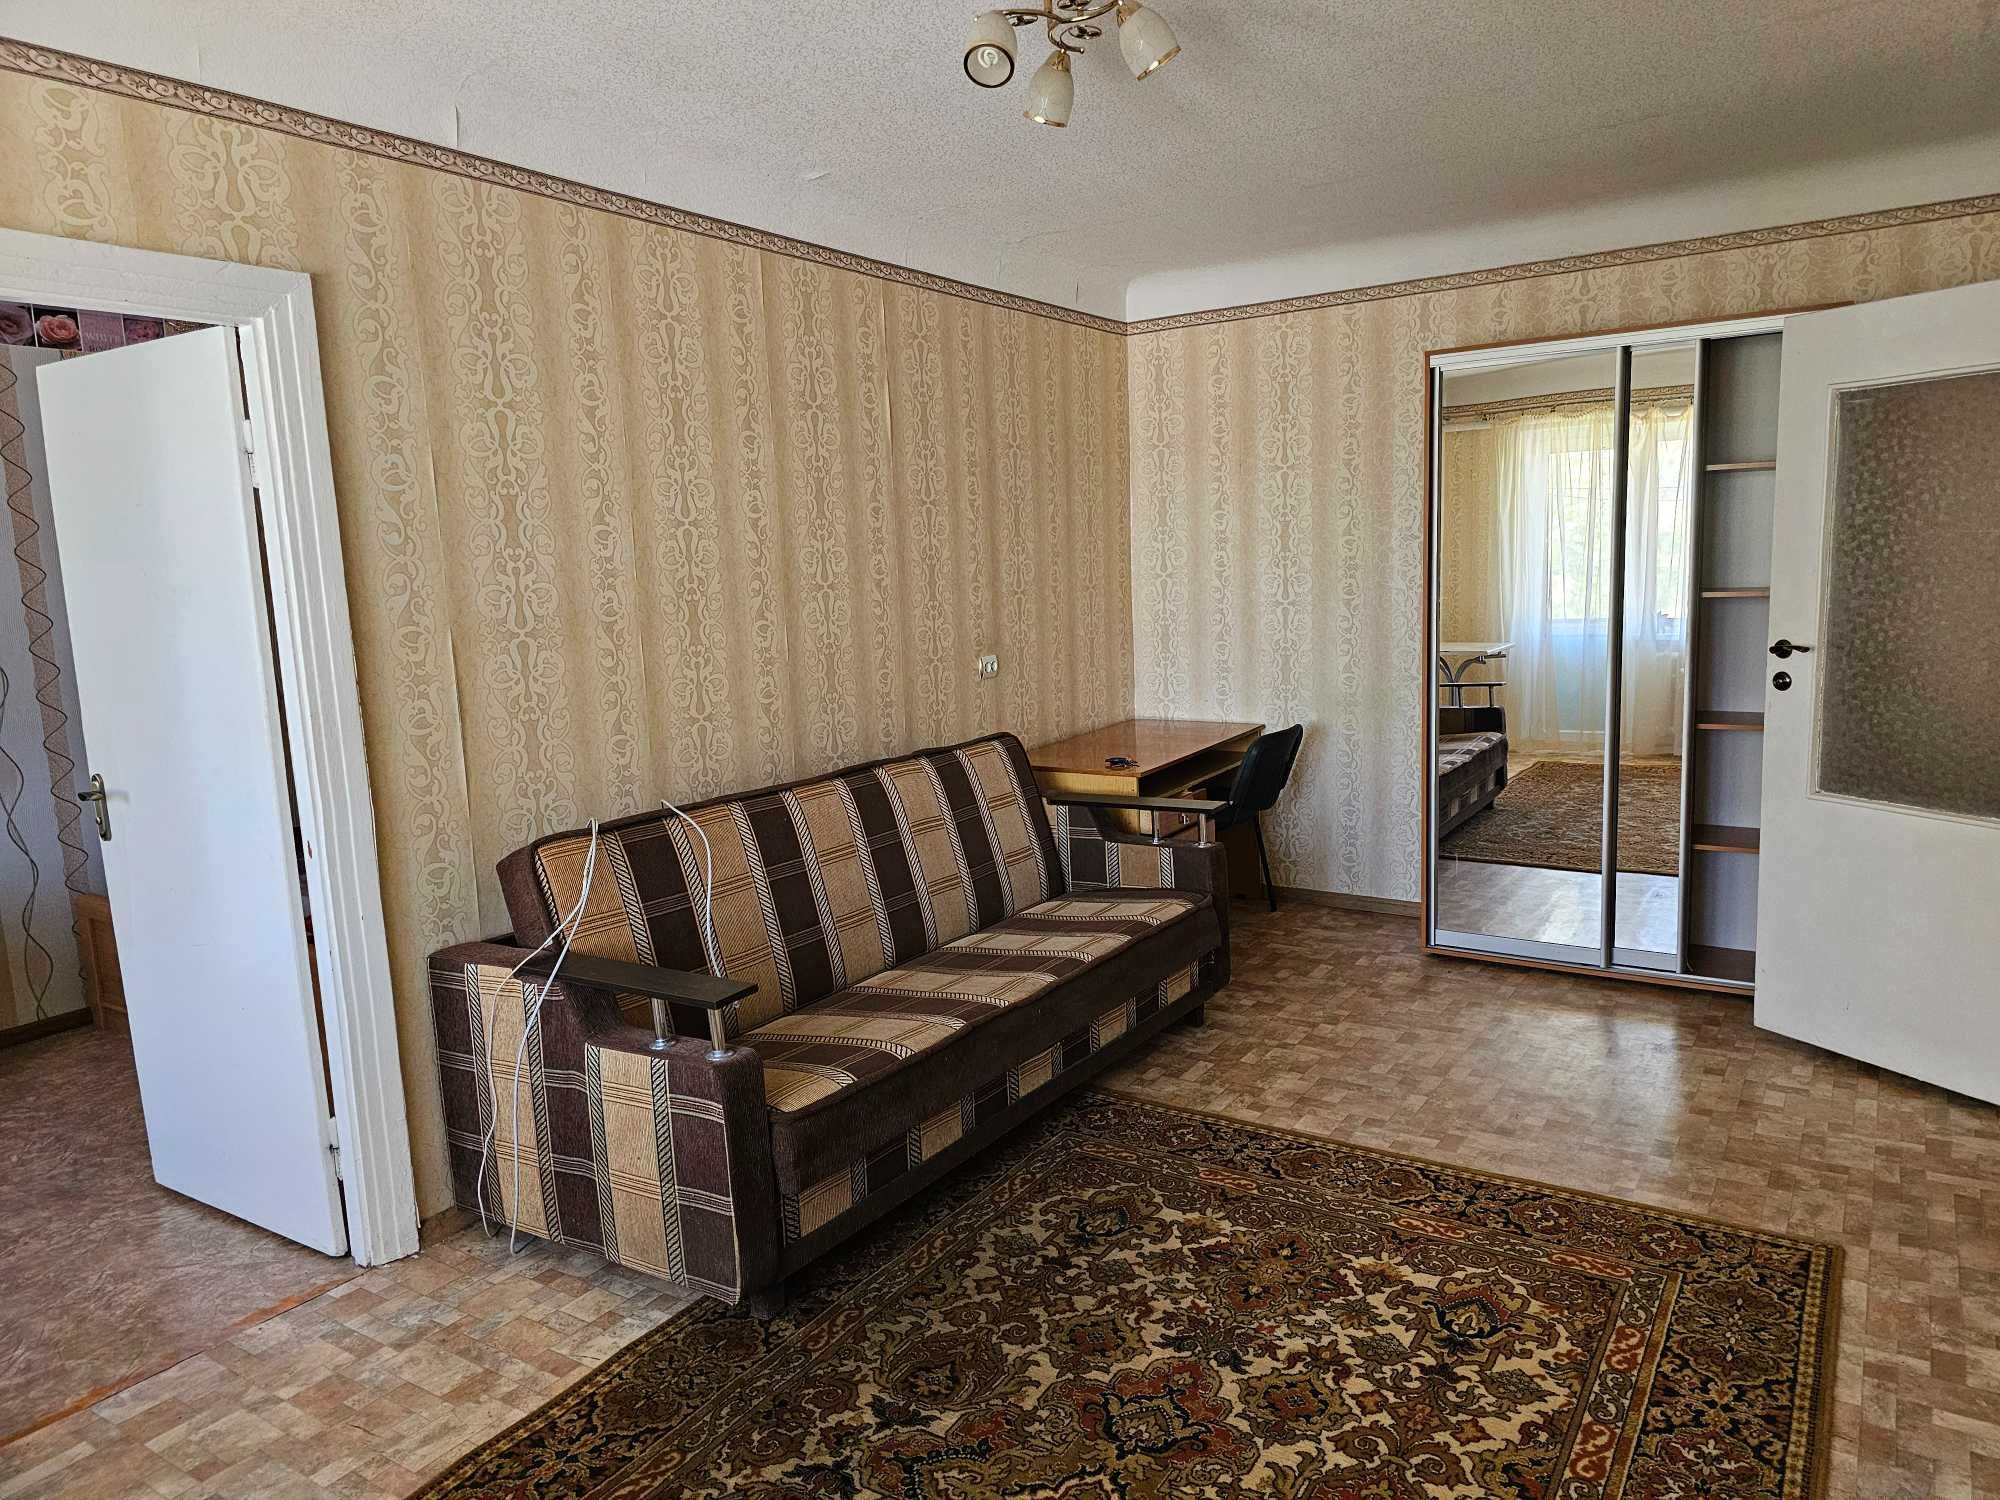 Продам 2-к квартиру на пр. Гагарина - ул. Абхазская